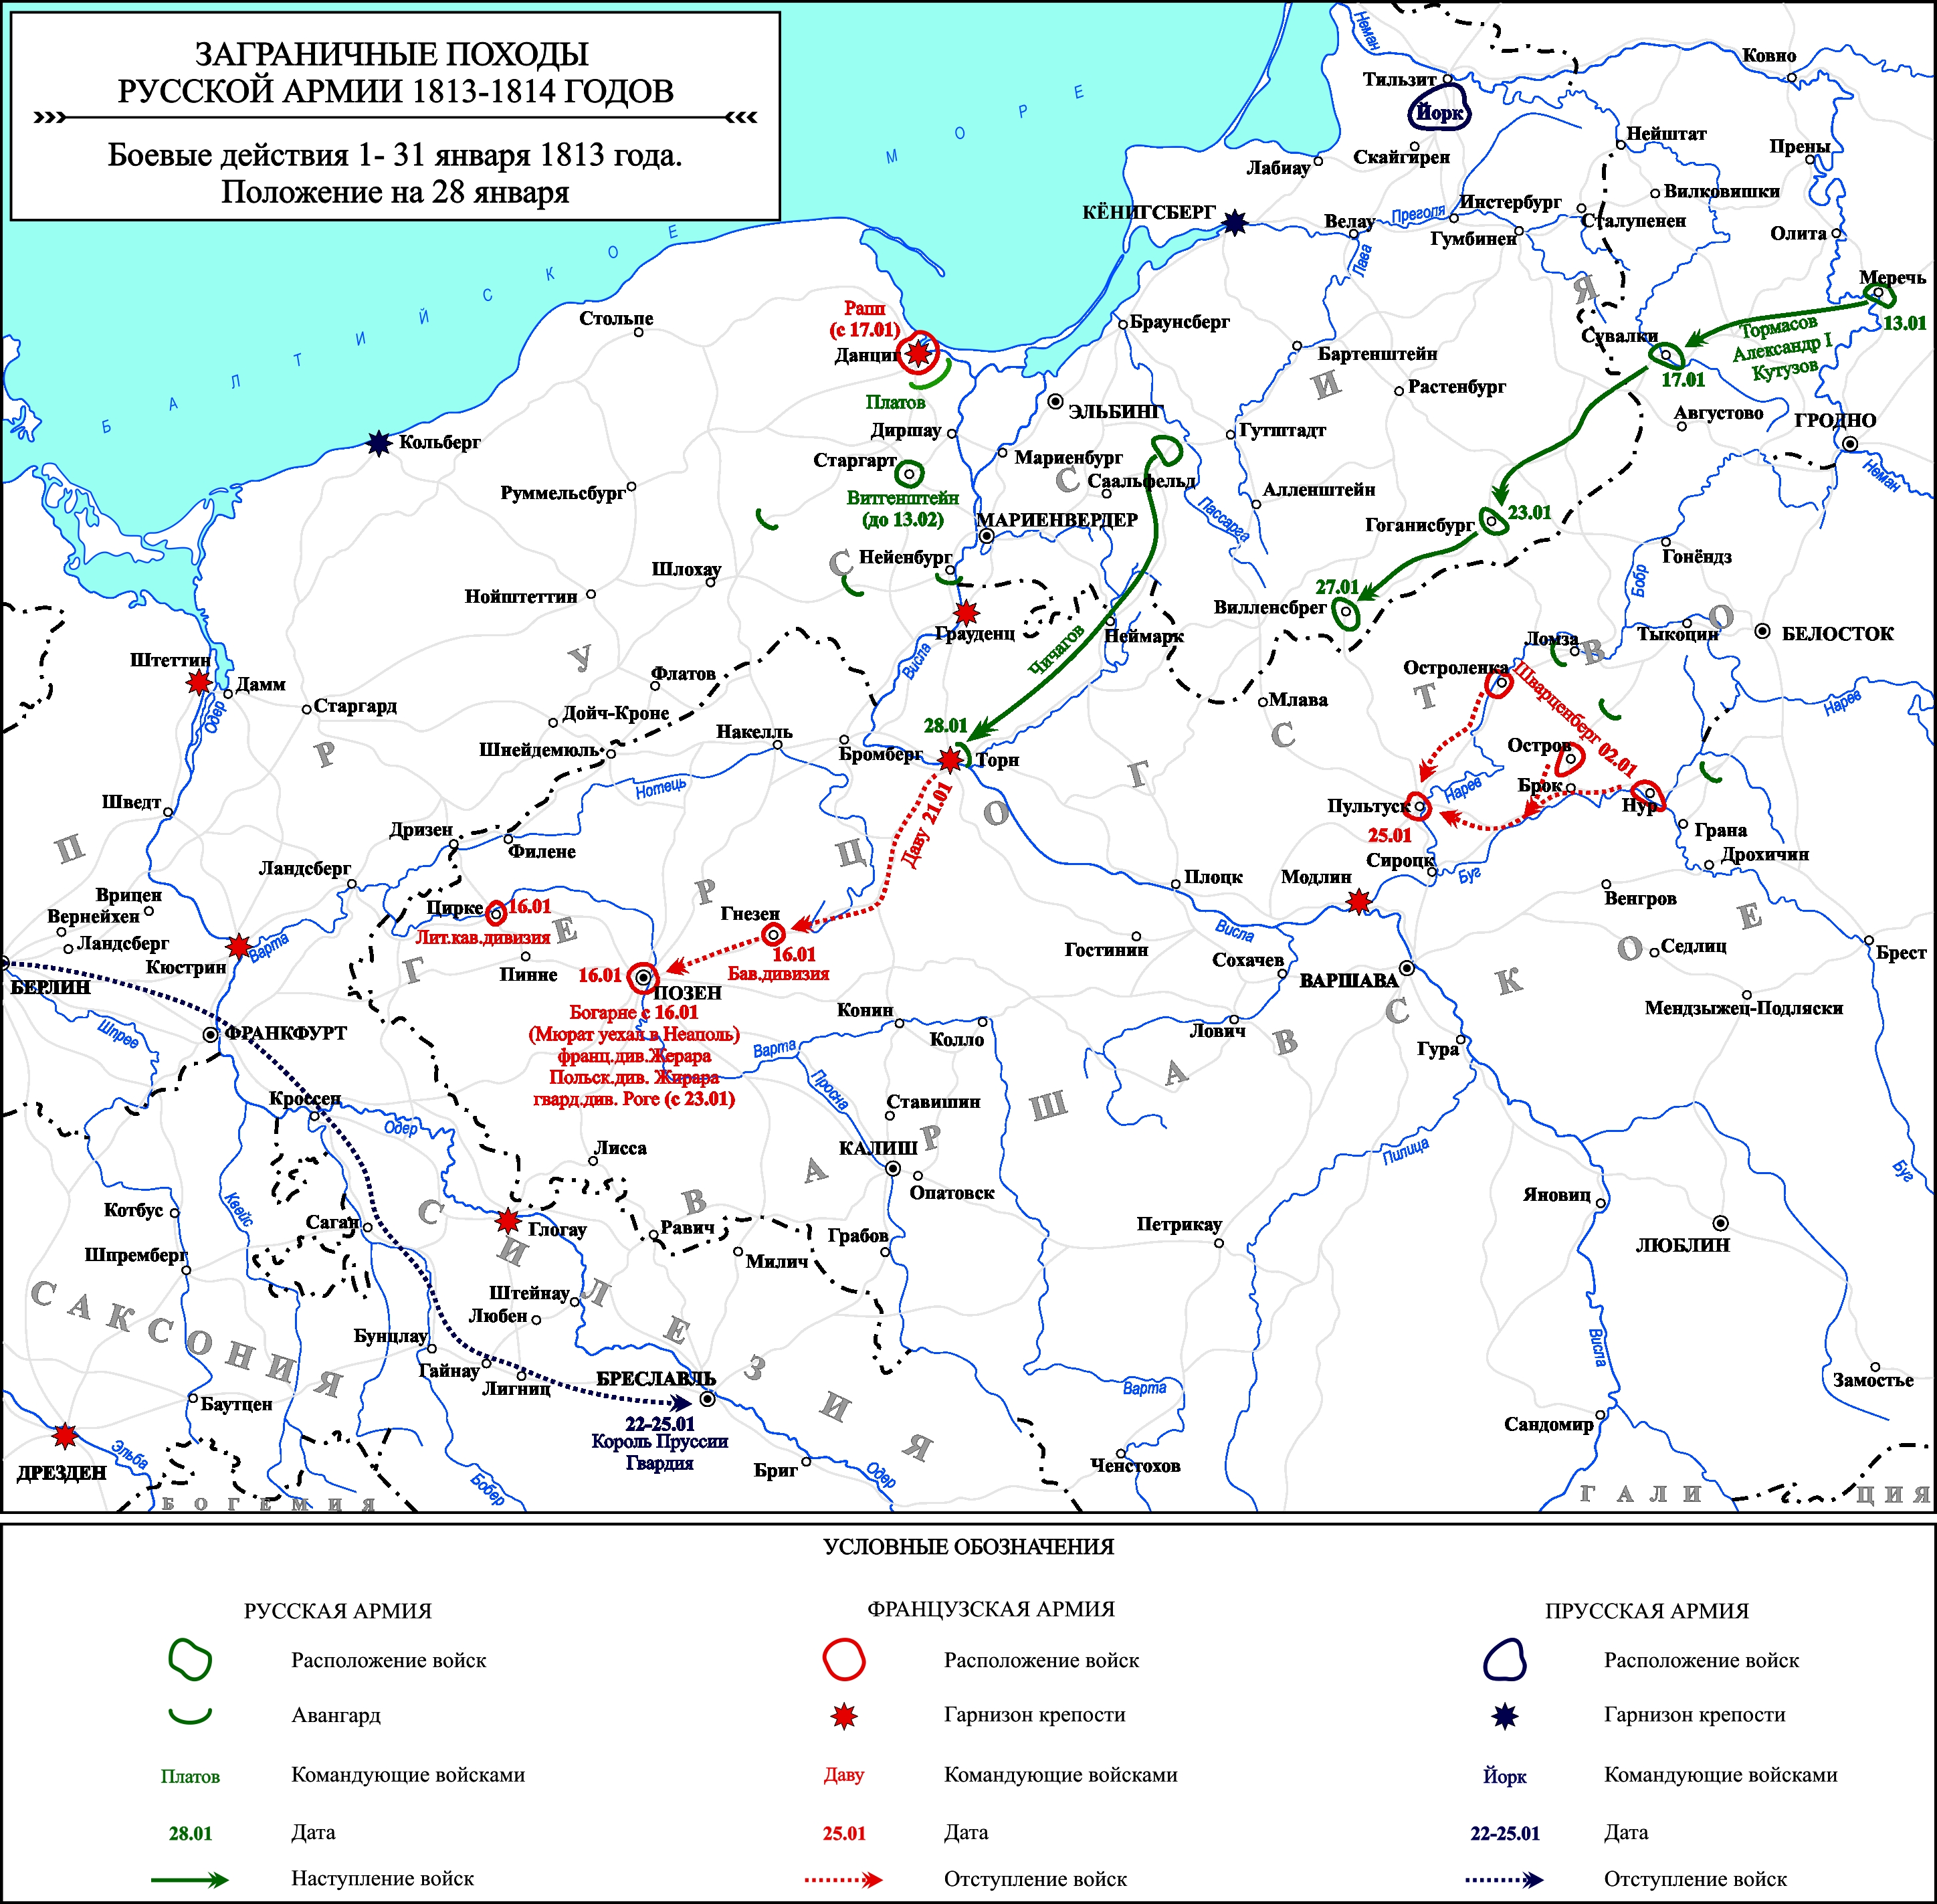 Заграничные походы Русской армии 1813-1814 гг. Положение на 28 января 1813 г.